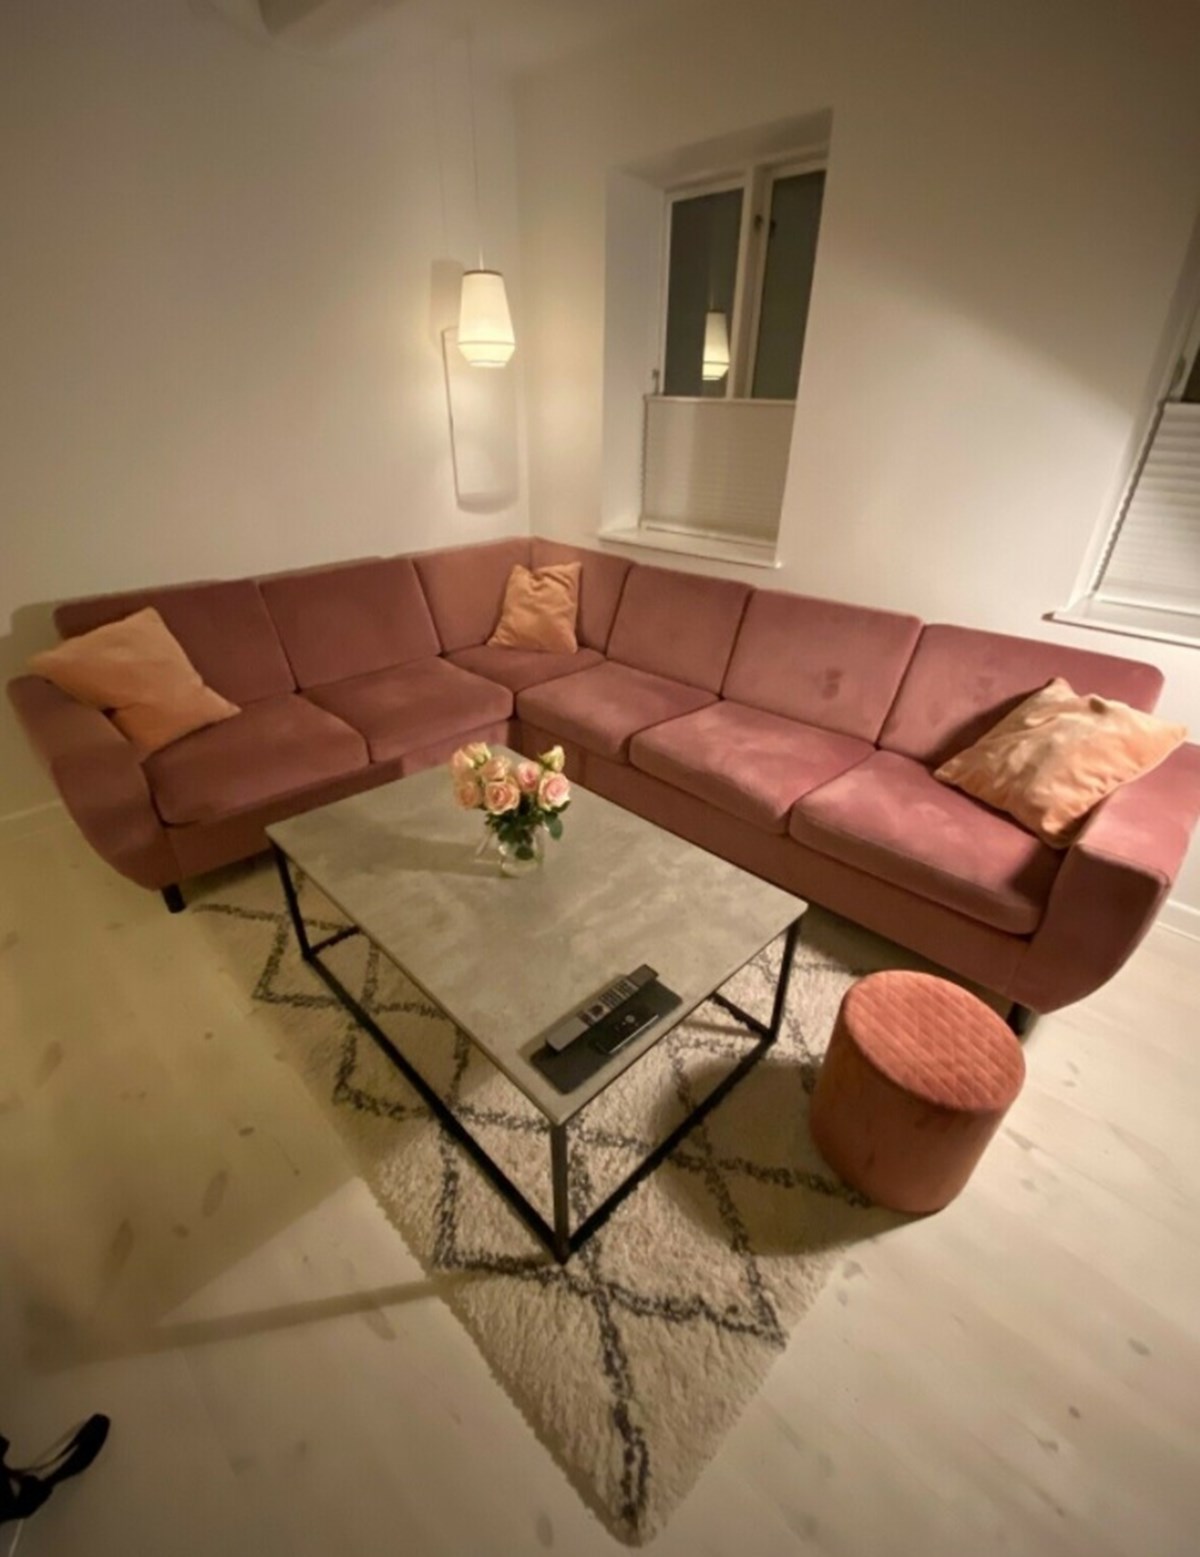 Simon i Dragør sælger denne sofa på DBA. Han håber at få 6.000 kroner for den. Sofaen er en 5-personers sofa